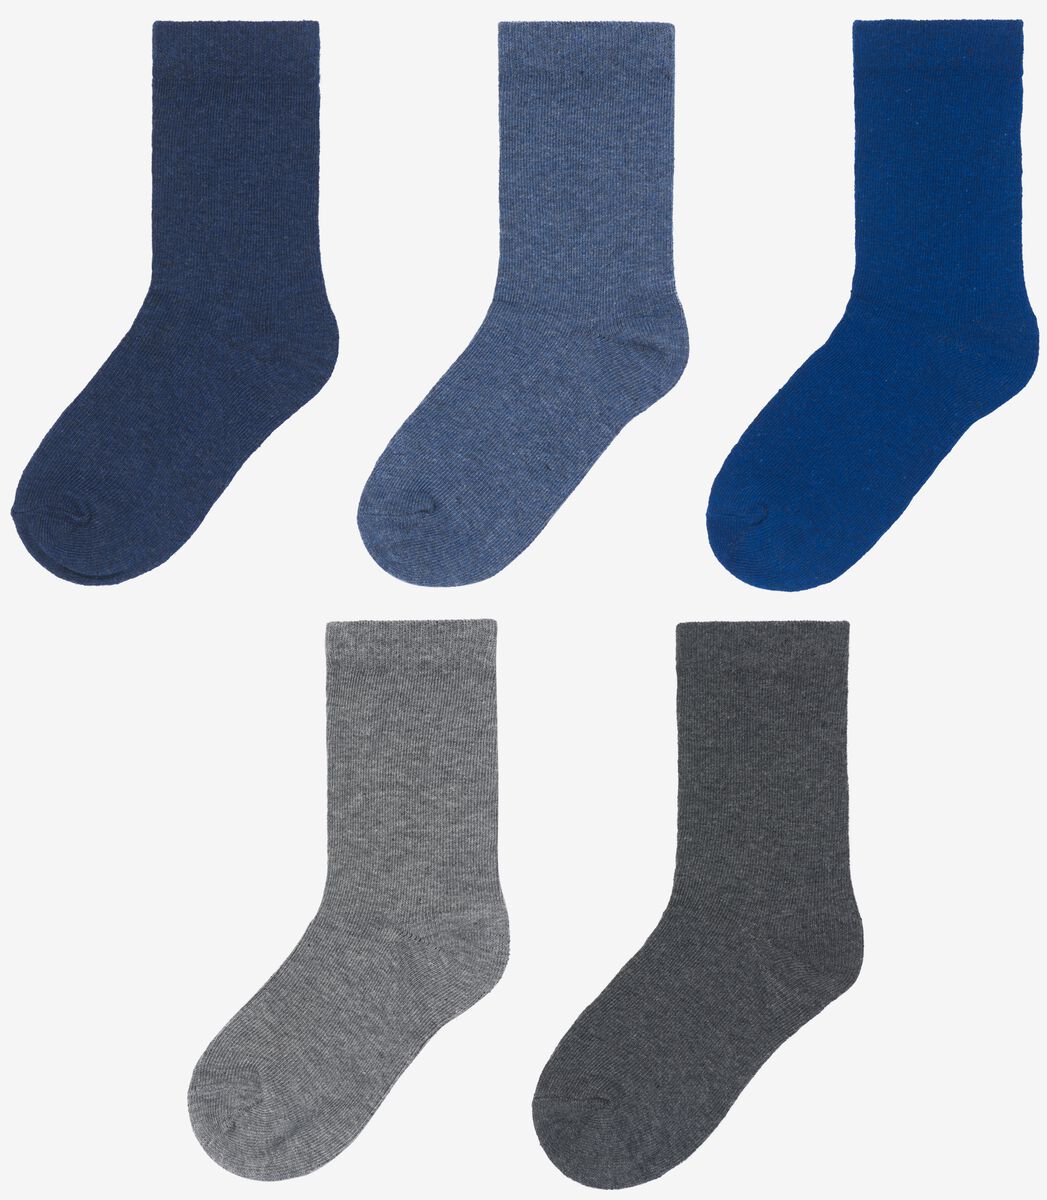 kinder sokken met katoen - 5 paar blauw blauw - 1000028427 - HEMA